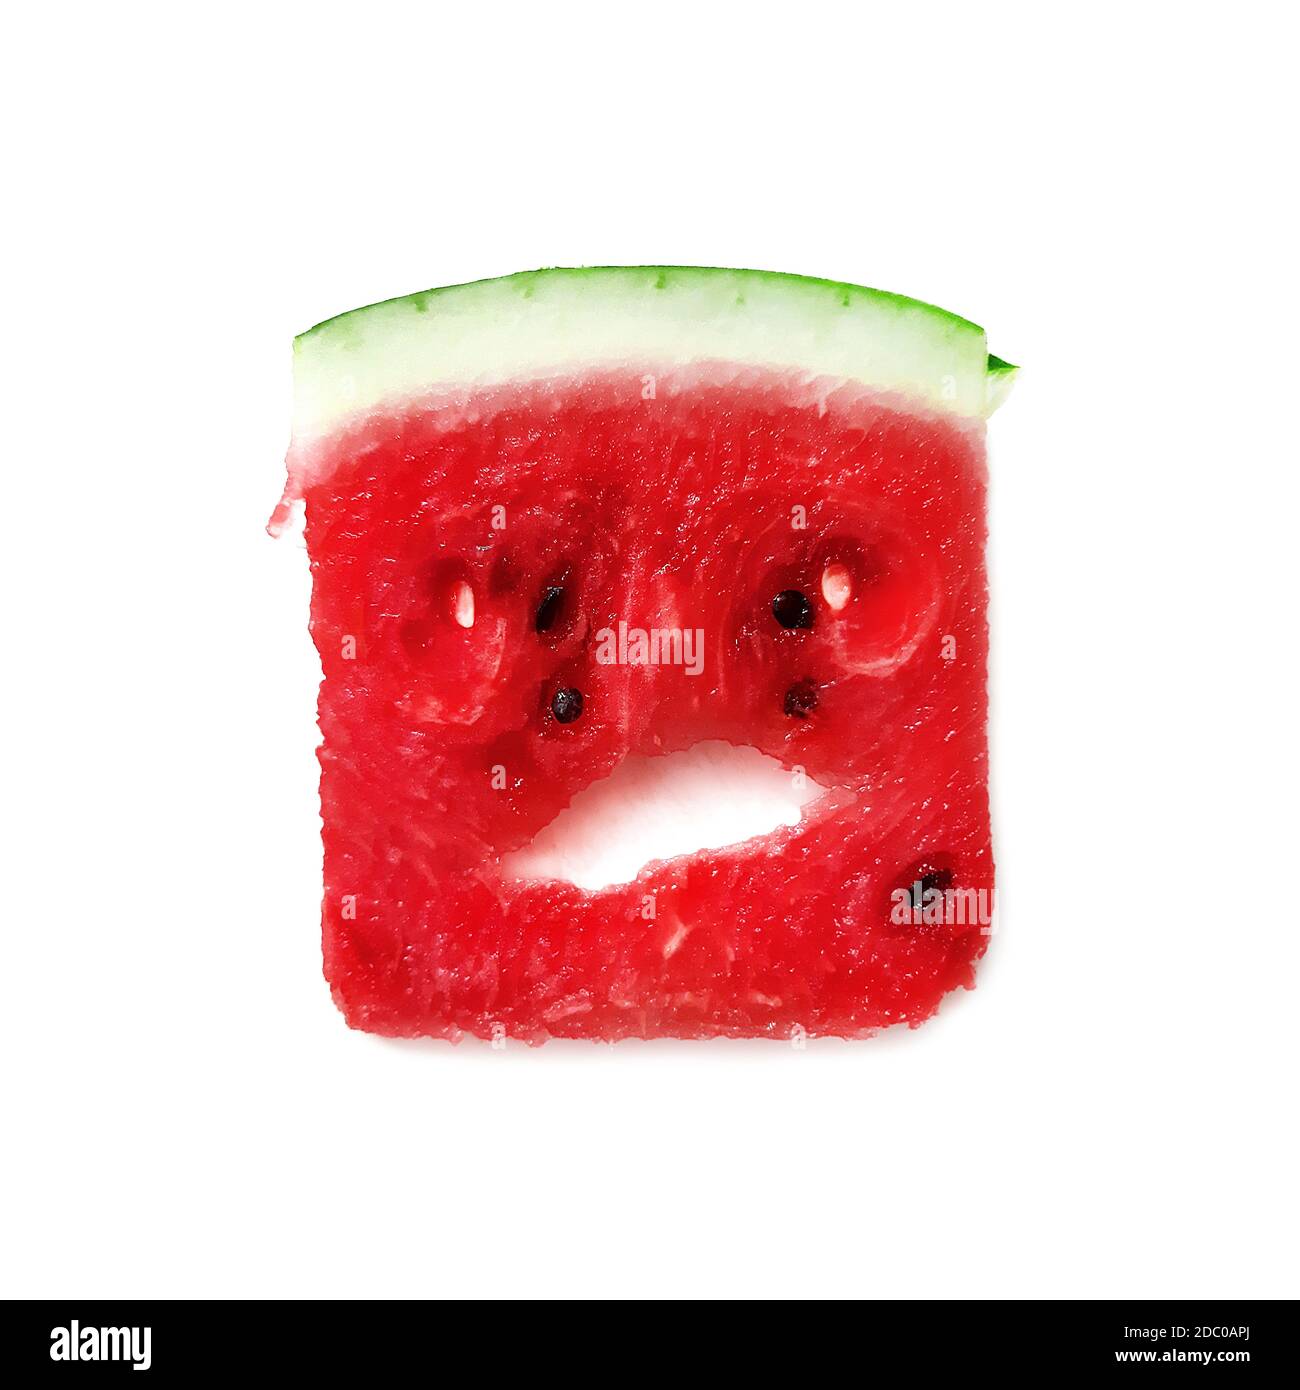 Wütend Wassermelone Charakter auf weißem Hintergrund. Wassermelone Charakter emoji. Stück Wassermelone. Stockfoto